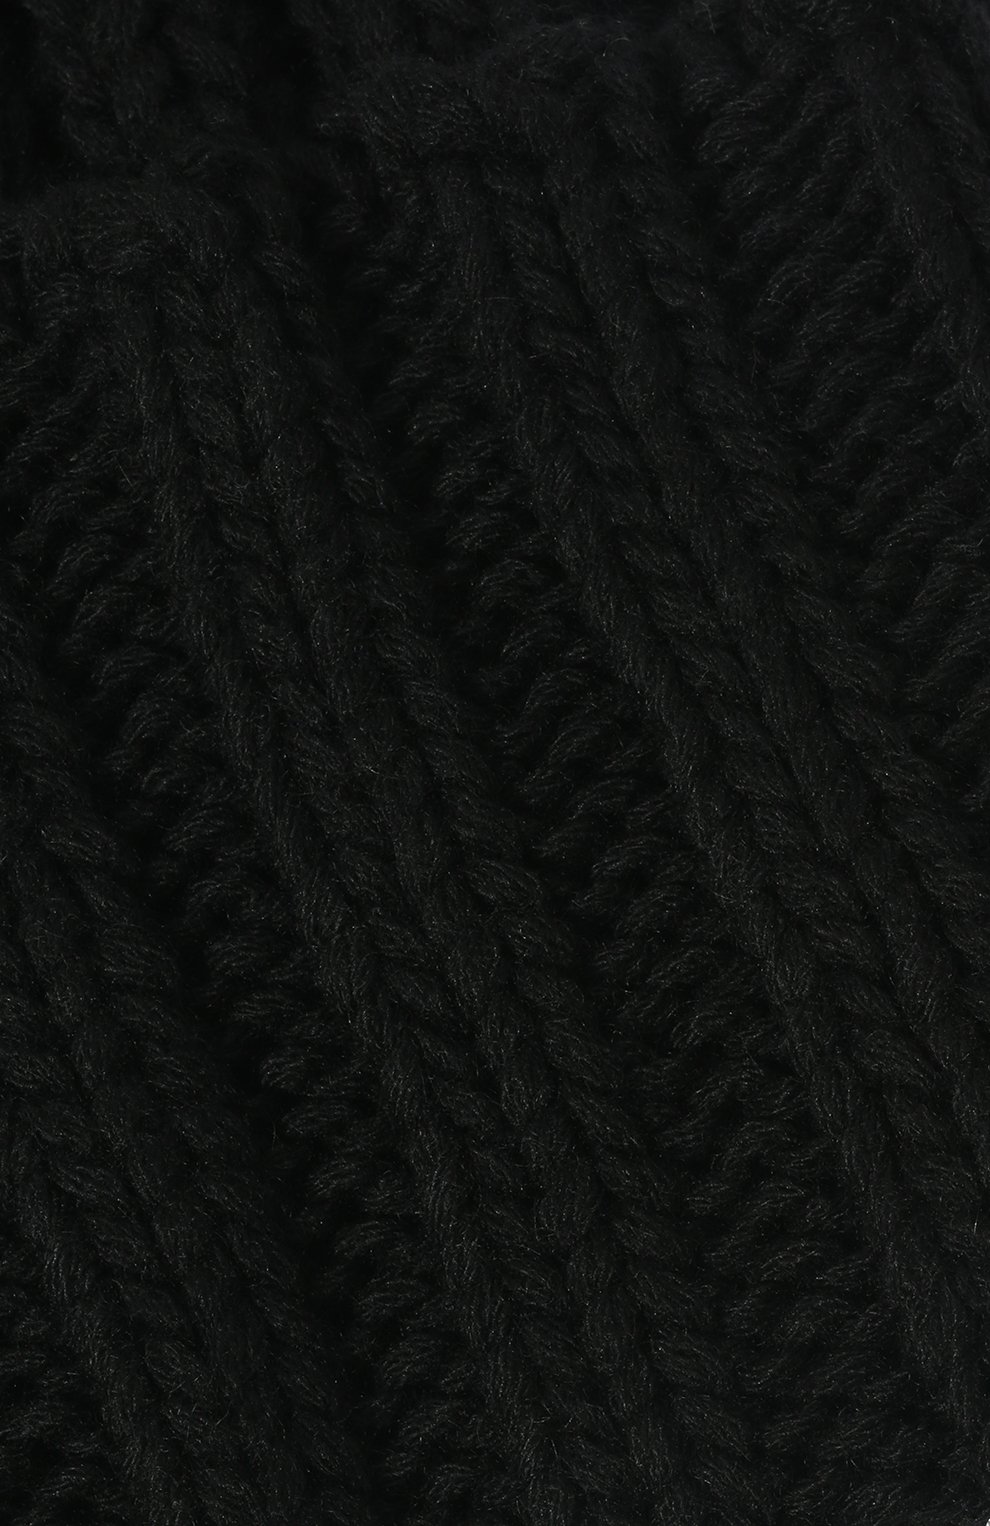 Мужская кашемировая шапка INVERNI черного цвета, арт. 1128 CM | Фото 3 (Материал: Текстиль, Кашемир, Шерсть; Кросс-КТ: Трикотаж)